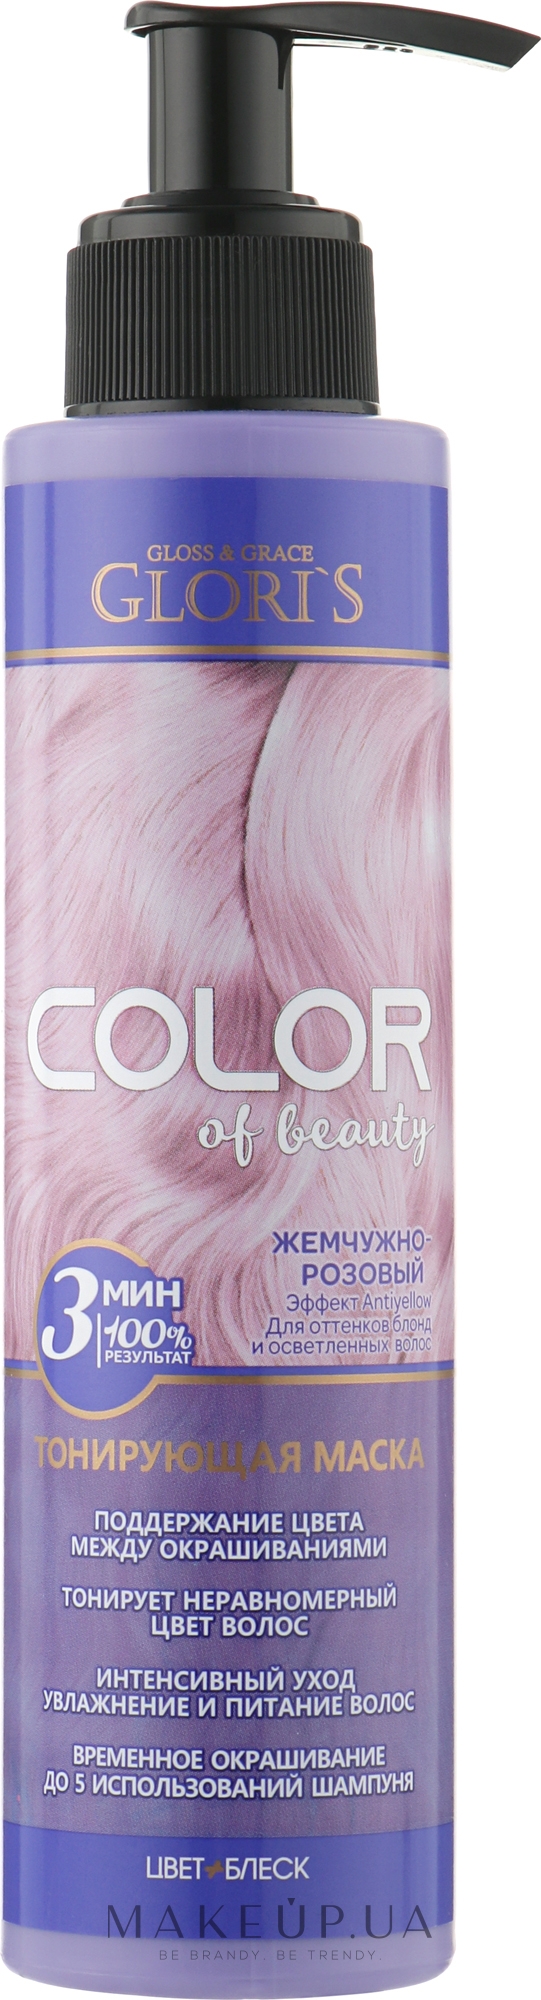 Тонувальна маска для волосся - Glori's Color Of Beauty Hair Mask — фото Жемчужно-розовый